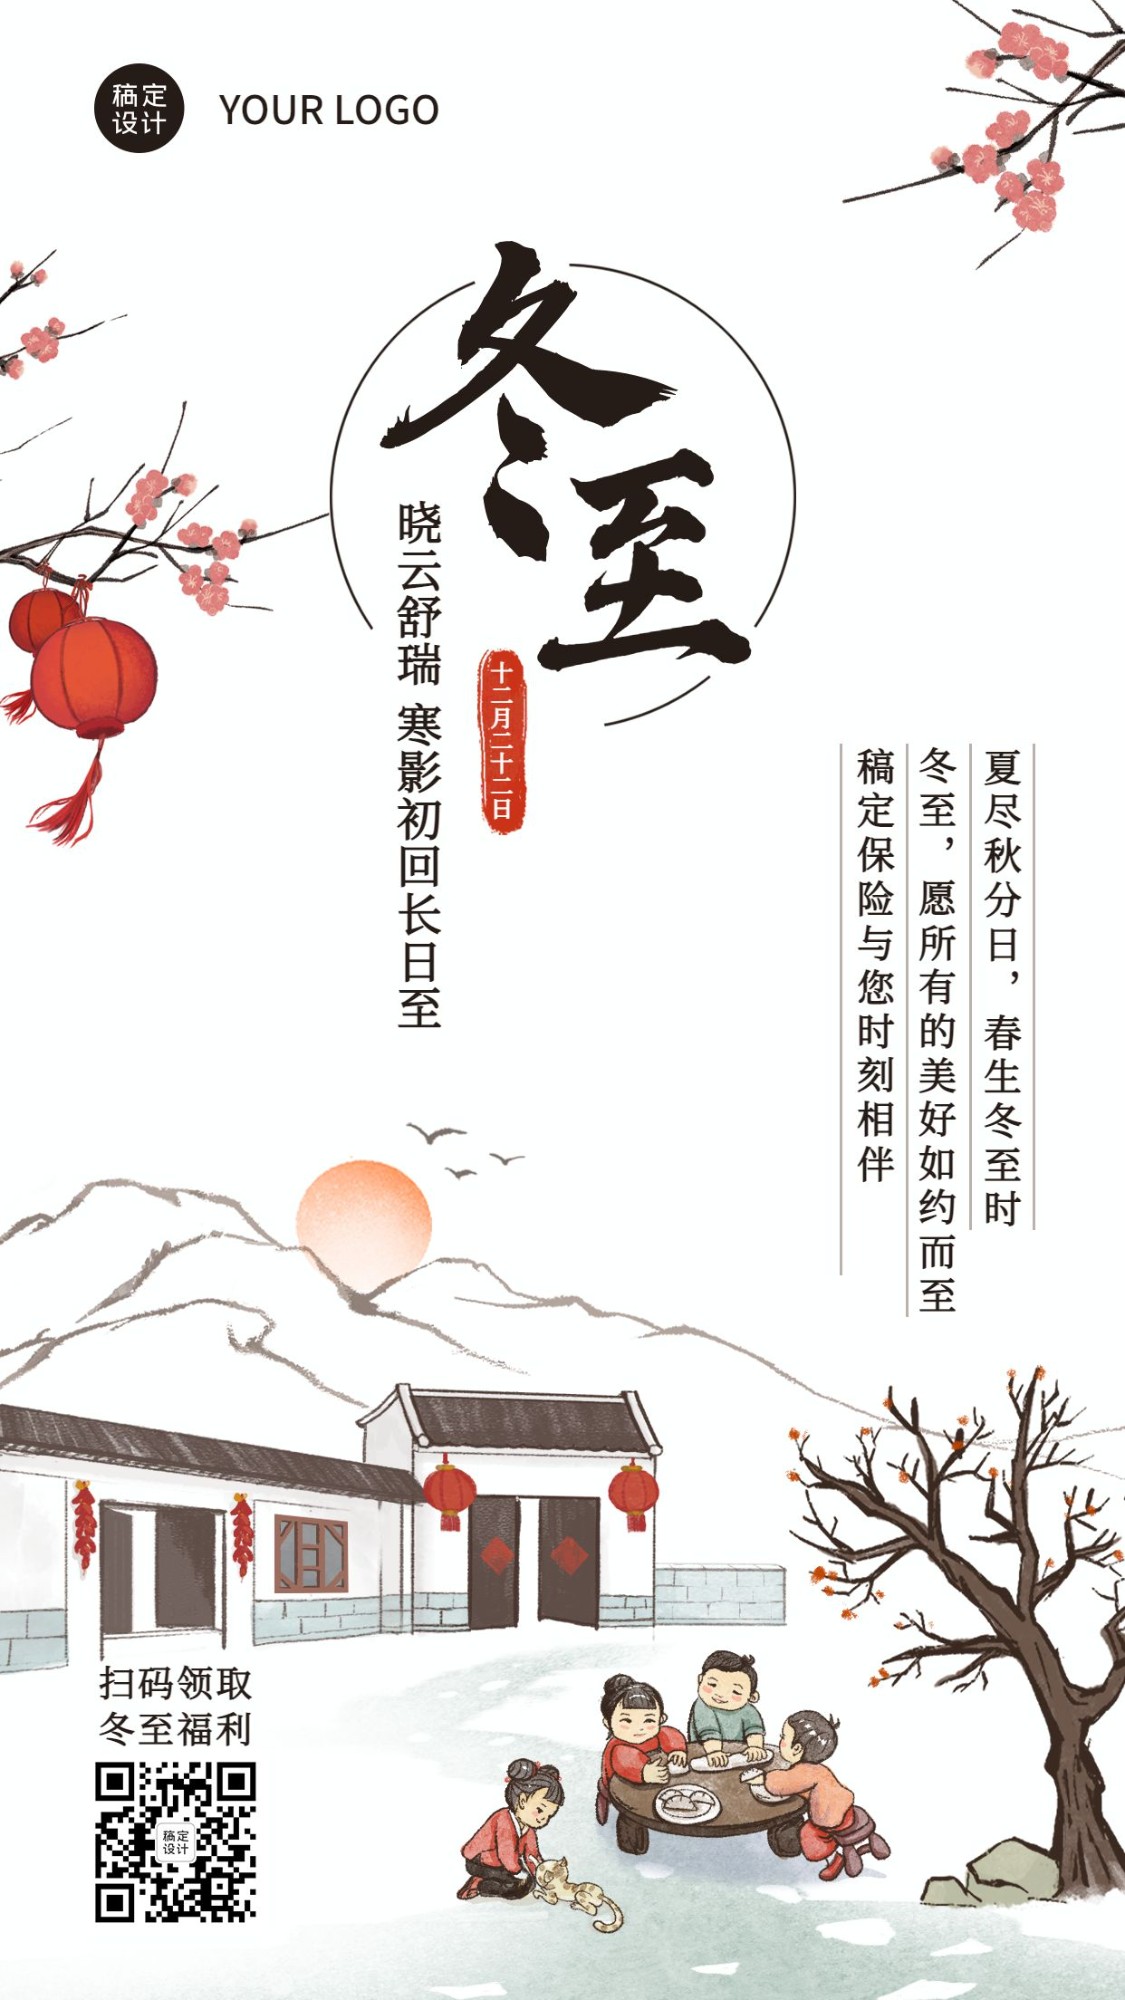 冬至金融保险节气祝福中国风竖版海报预览效果